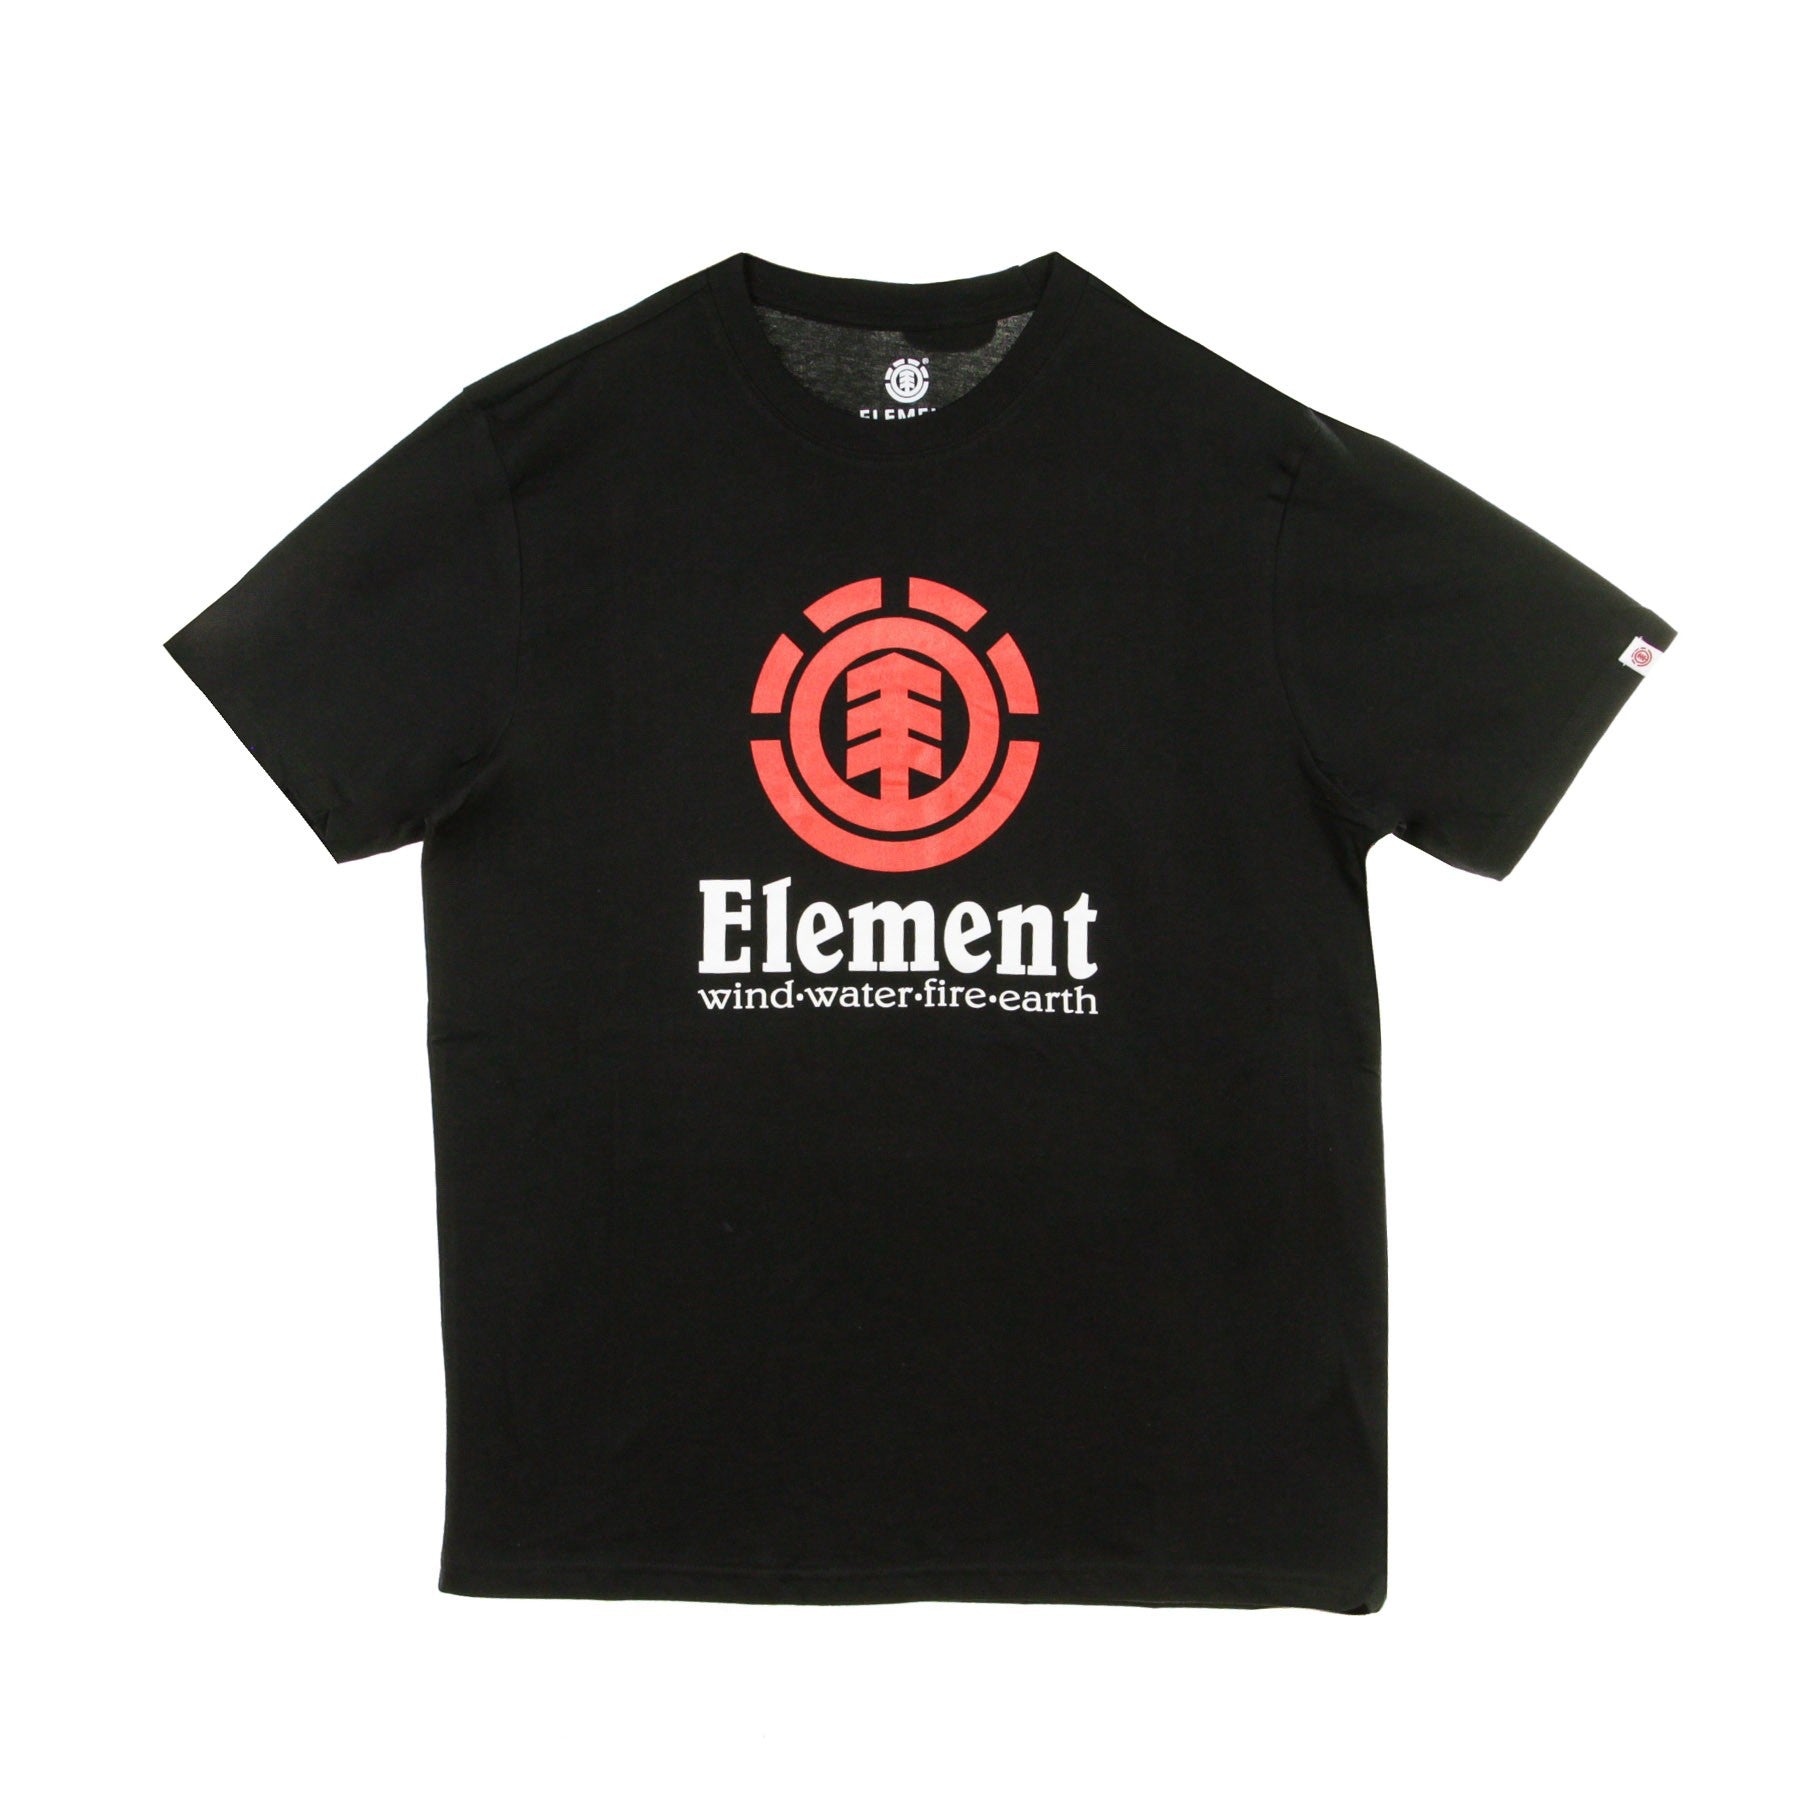 Element, Maglietta Uomo Vertical, Flint Black